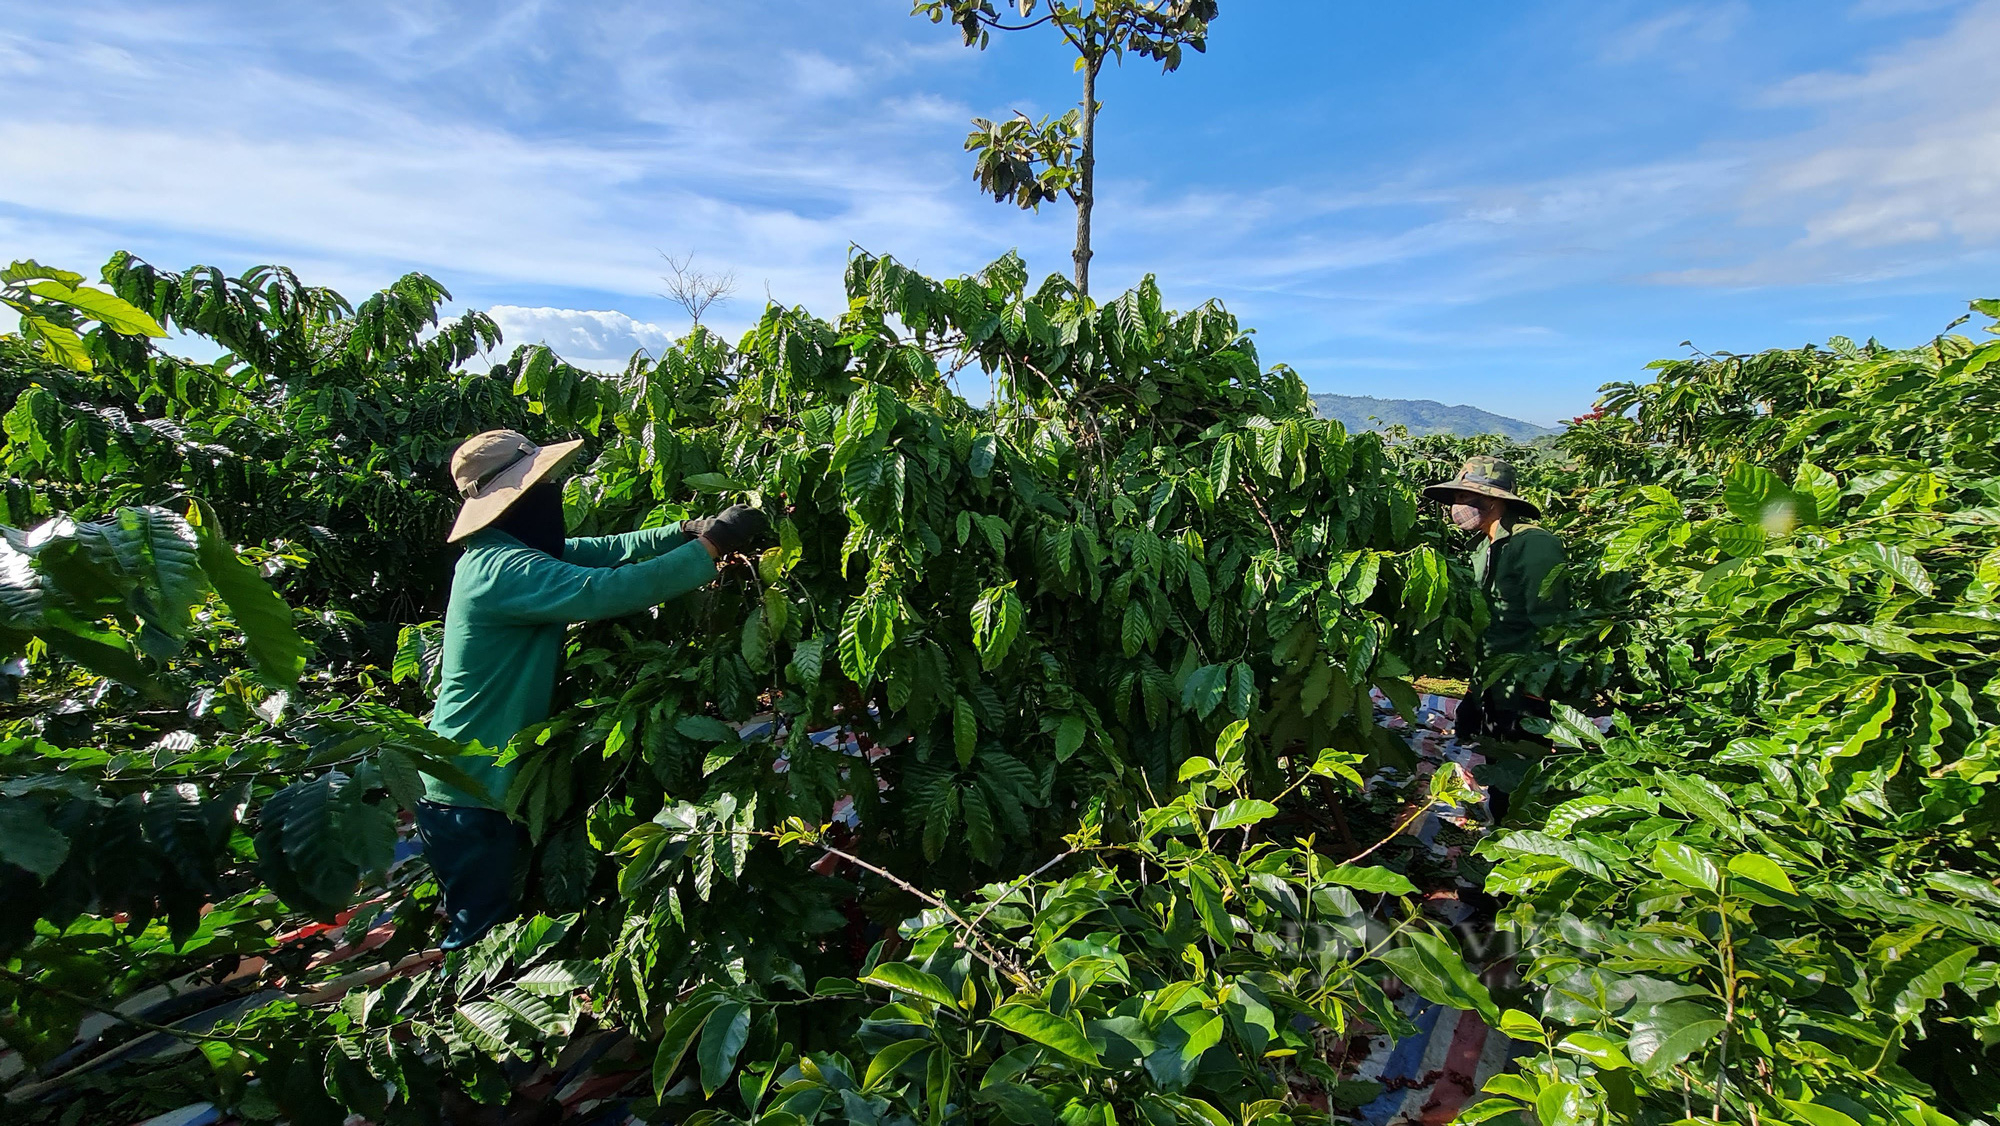 “Khan hiếm” nhân công thu hoạch, người hái cà phê khoán kiếm 500.000-700.000 đồng mỗi ngày - Ảnh 2.